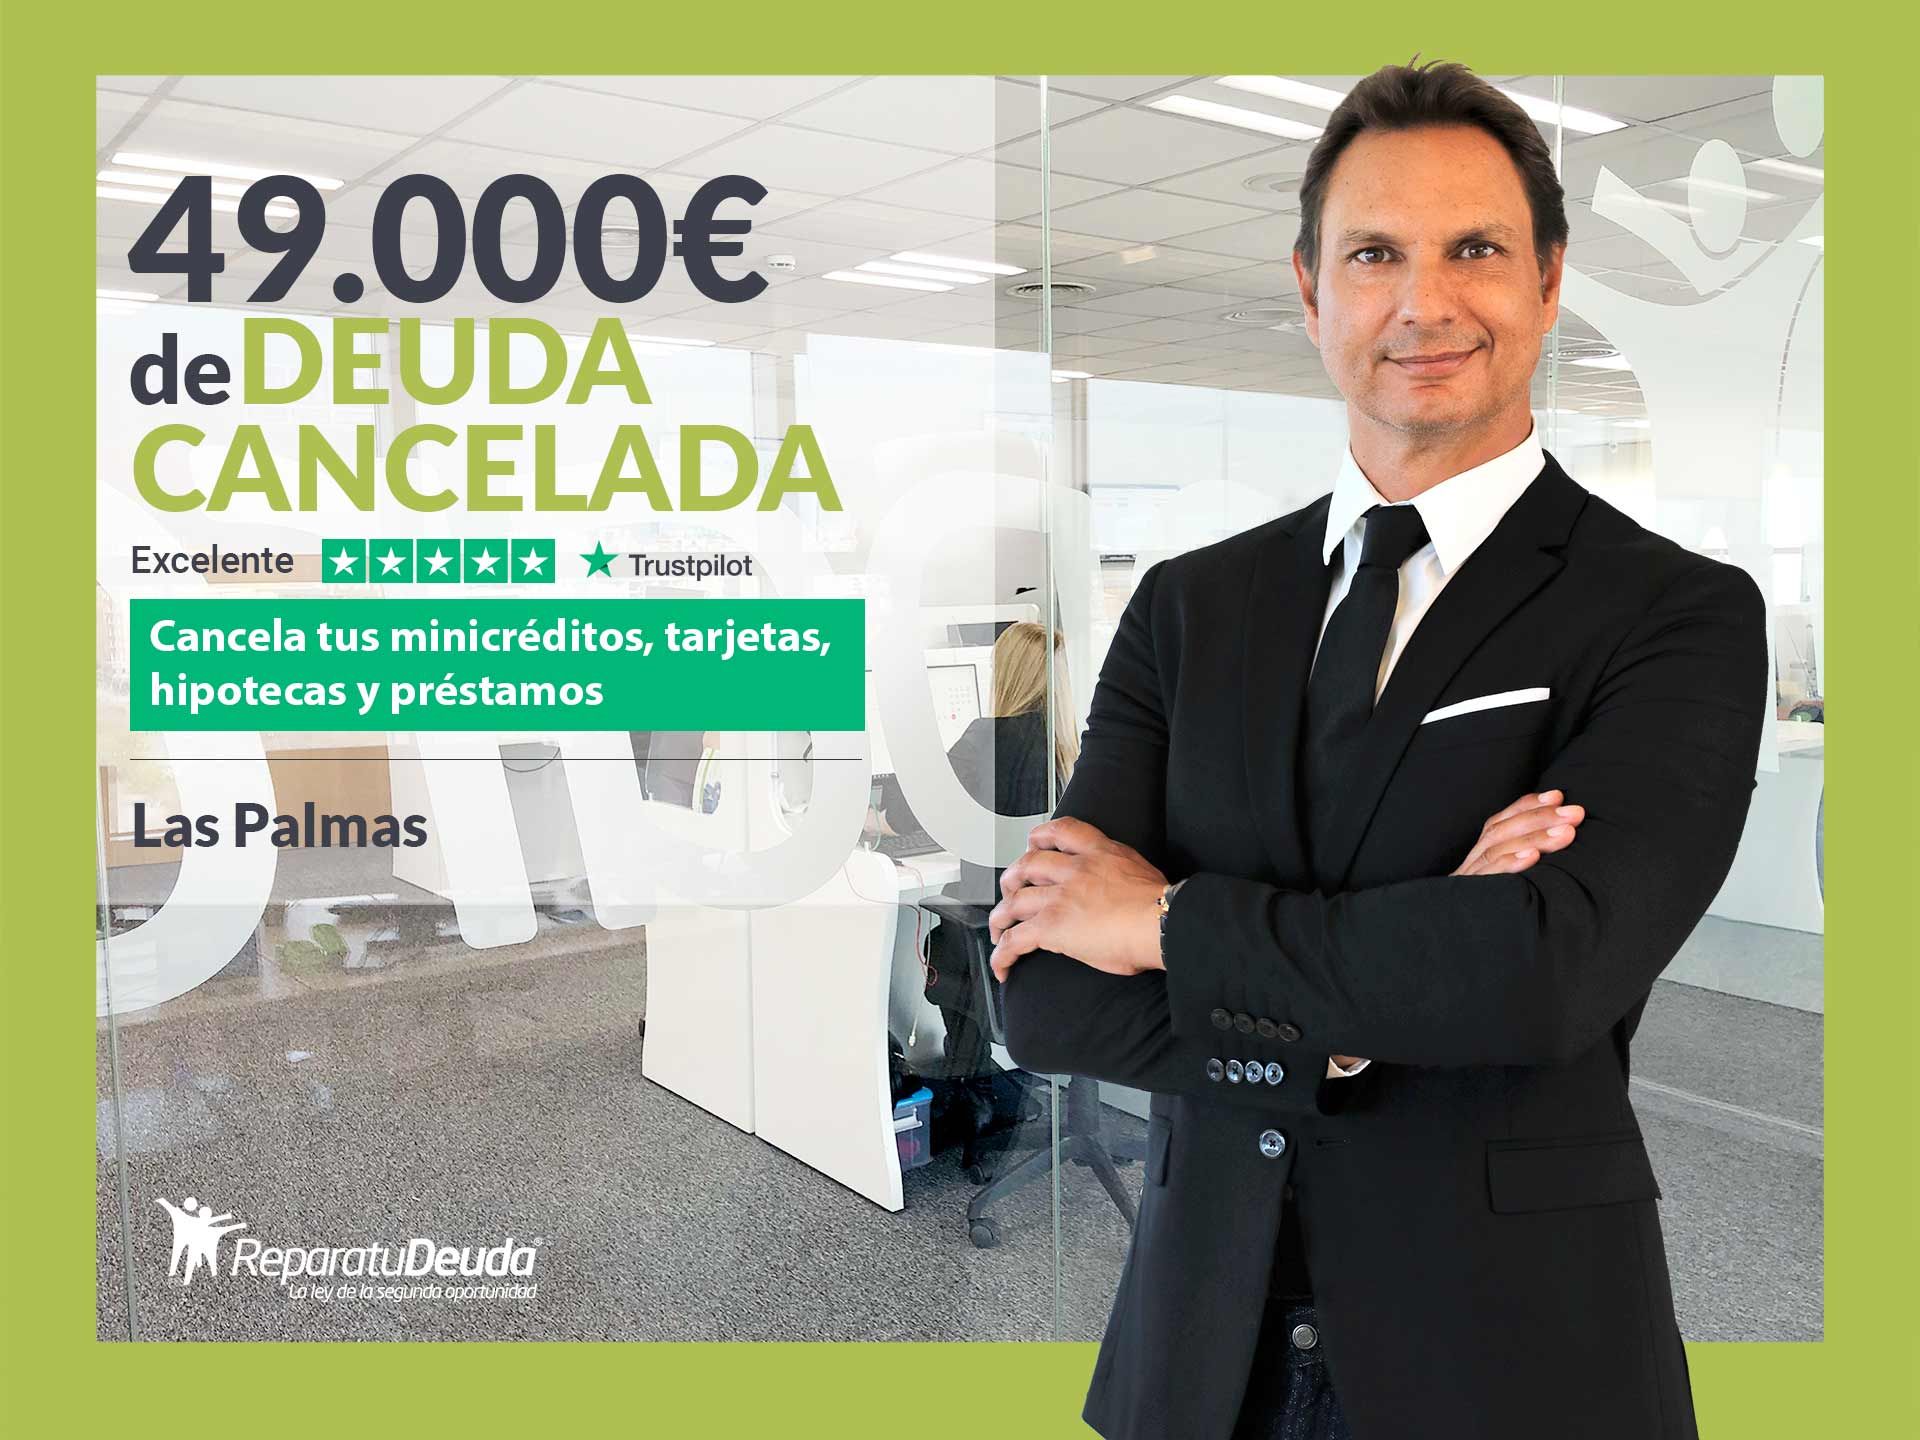 Repara tu Deuda Abogados cancela 49.000? en Las Palmas de Gran Canaria con la Ley de Segunda Oportunidad